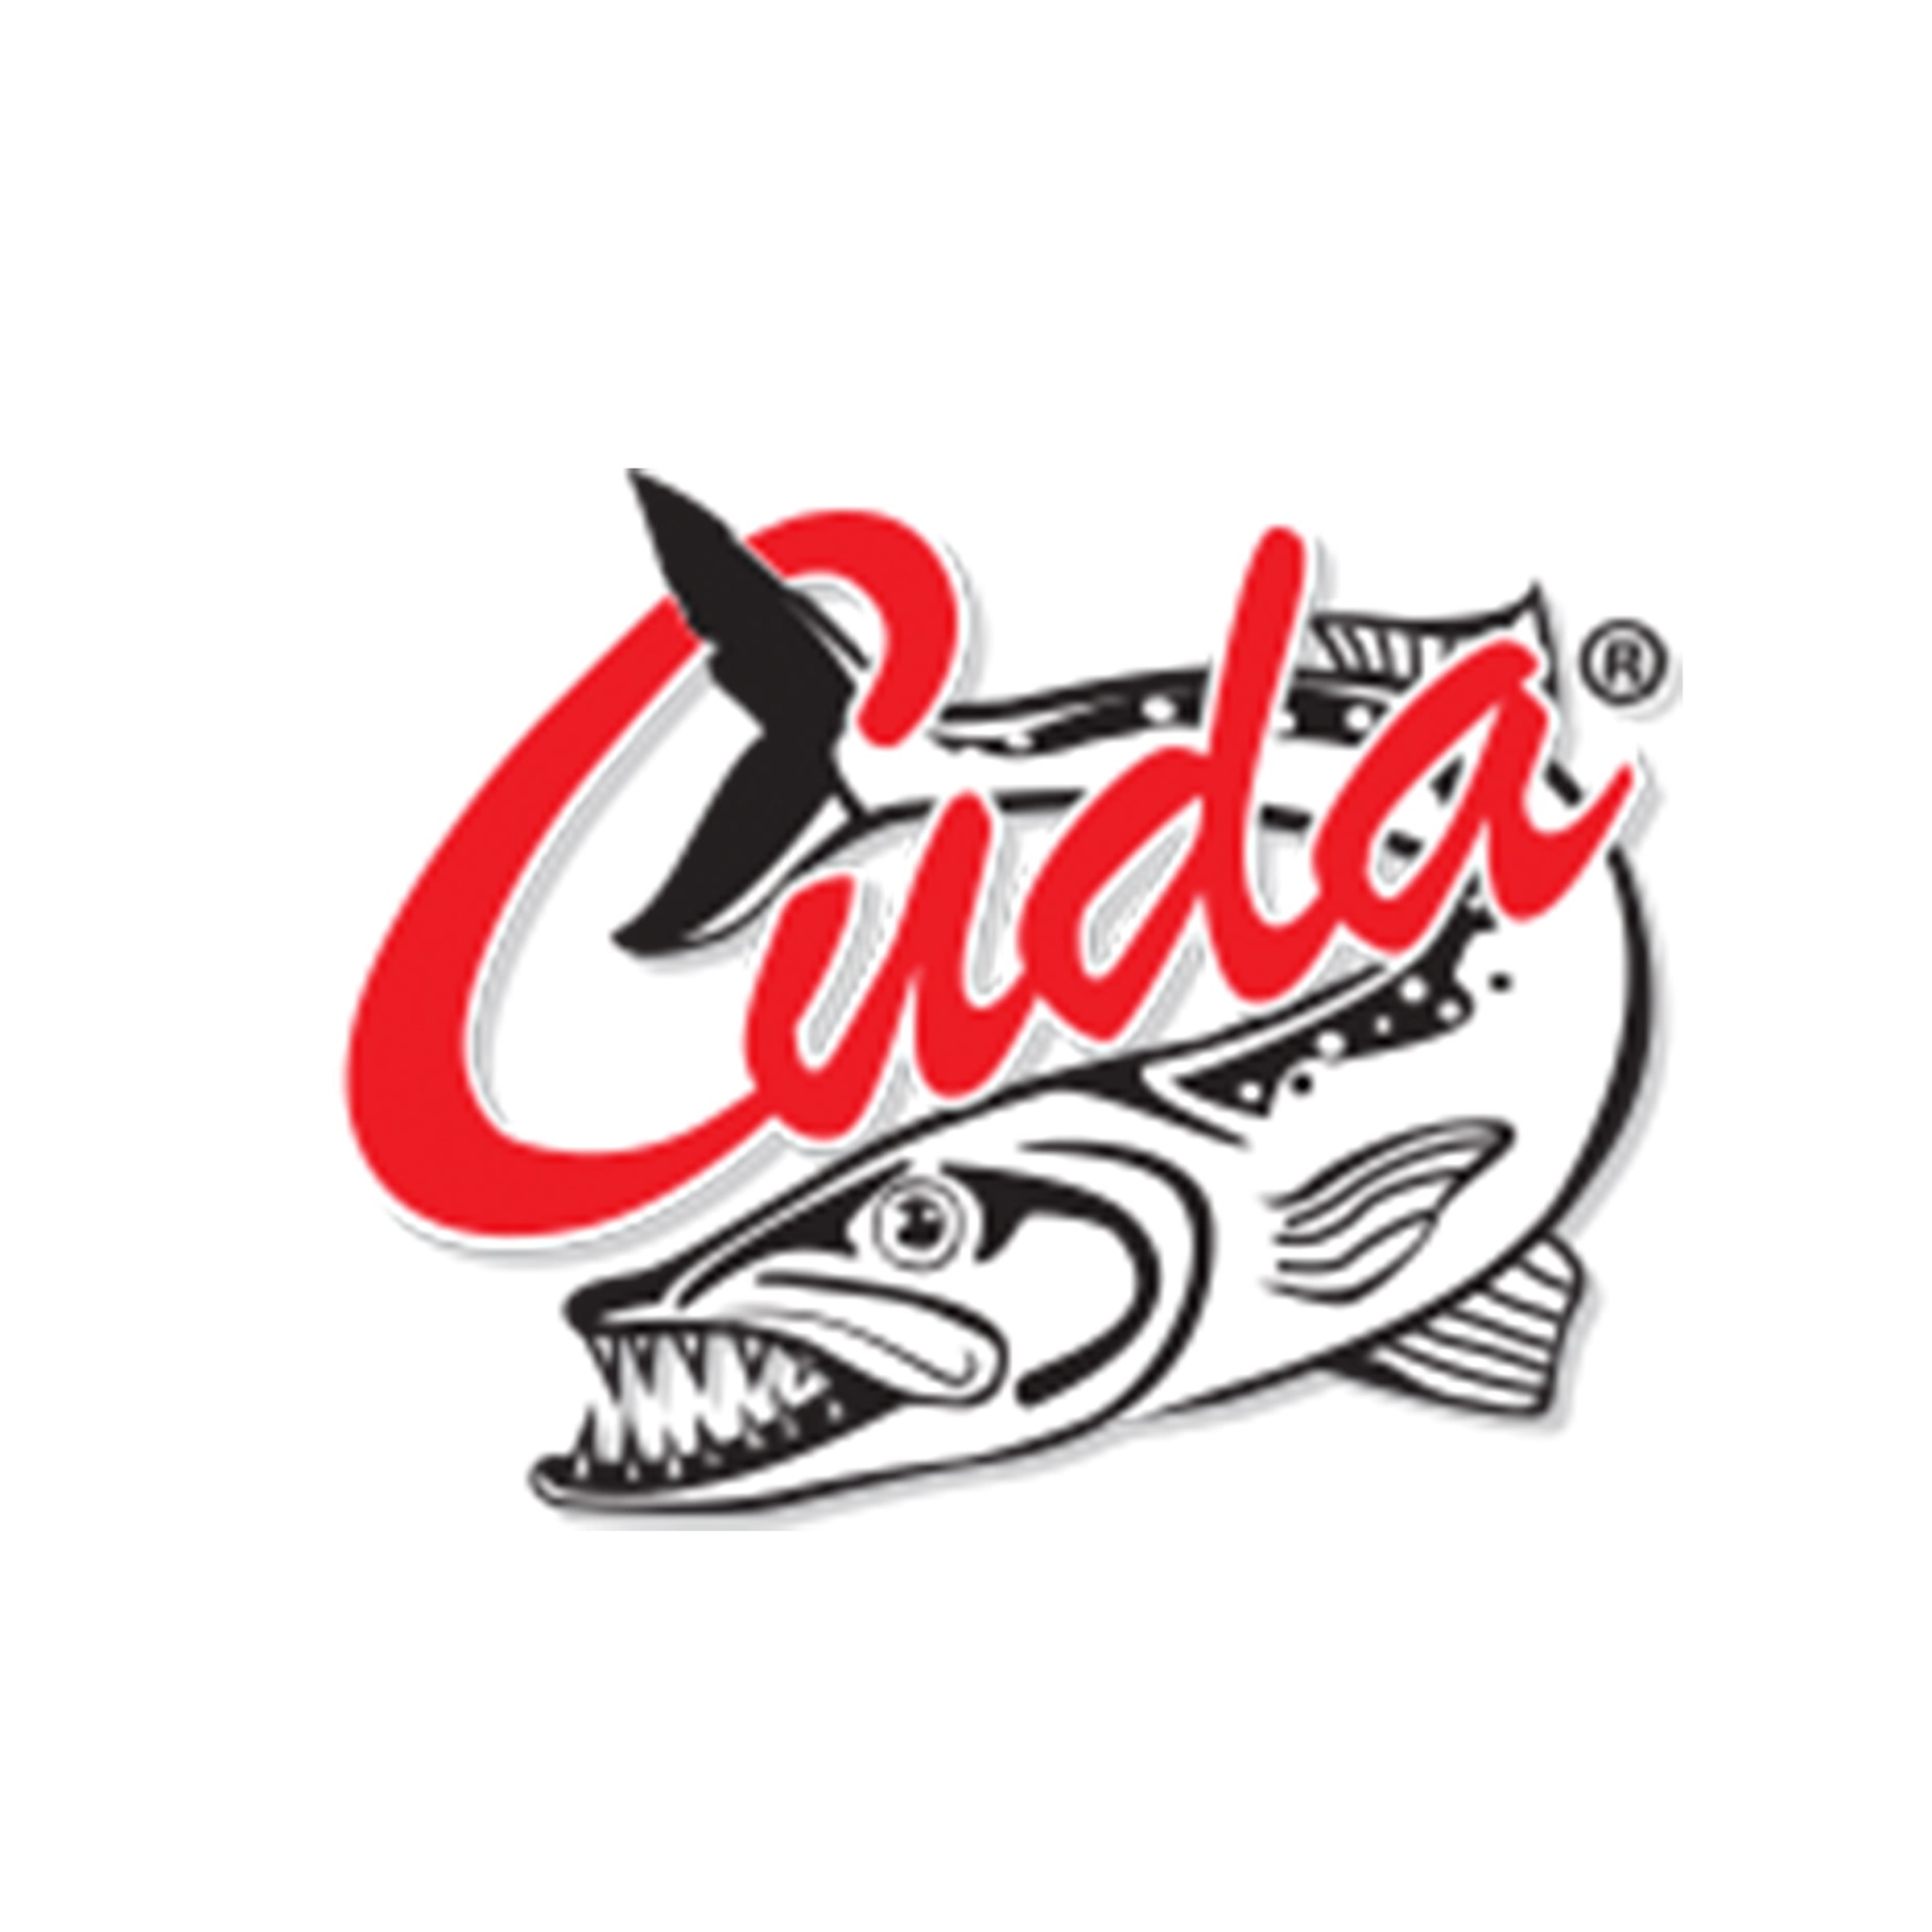 A_Cuda_logo